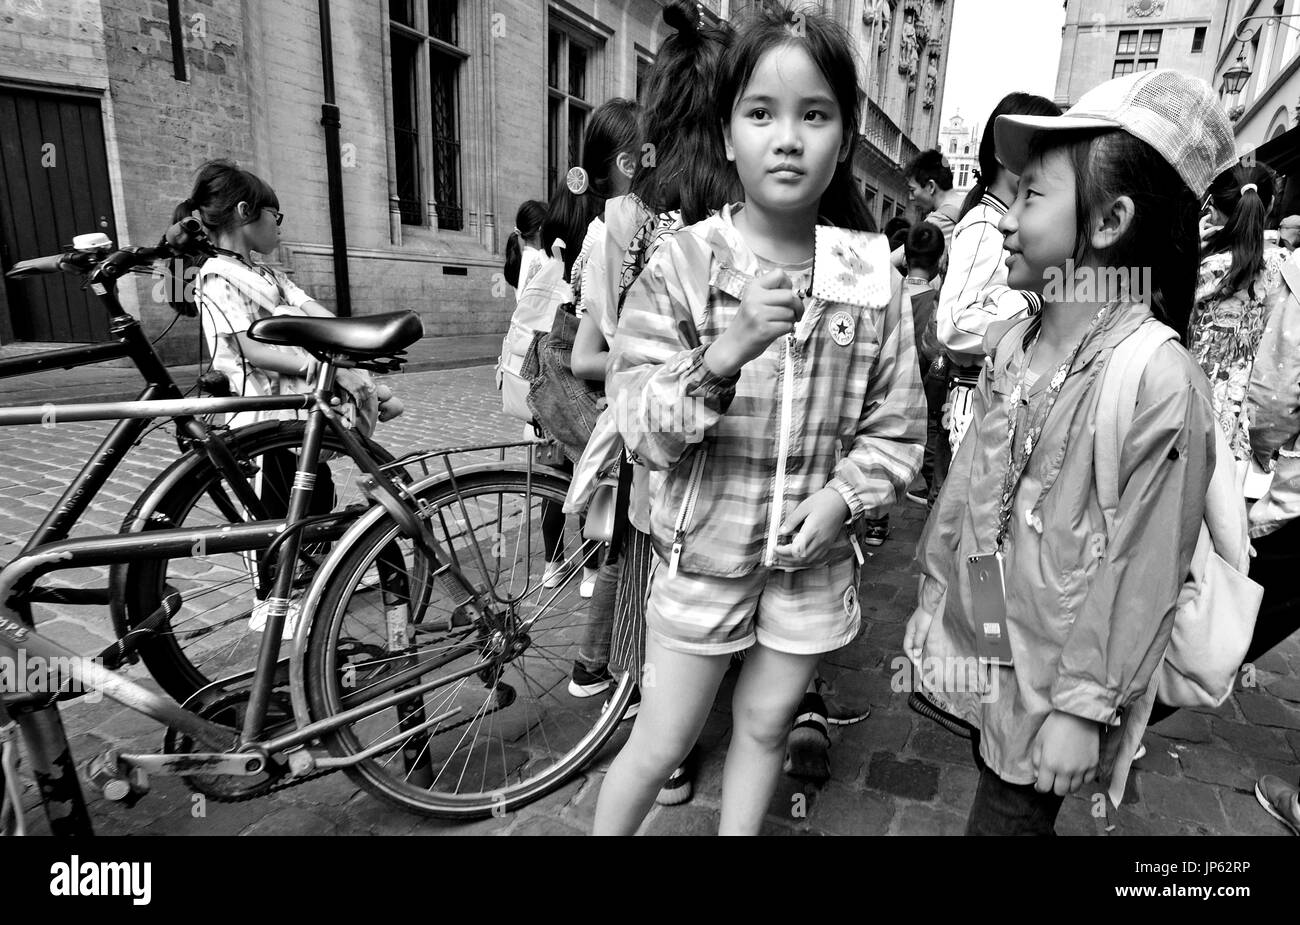 Brüssel, Belgien. Chinesische Kinder auf einer organisierten Reise im Zentrum von Brüssel Stockfoto